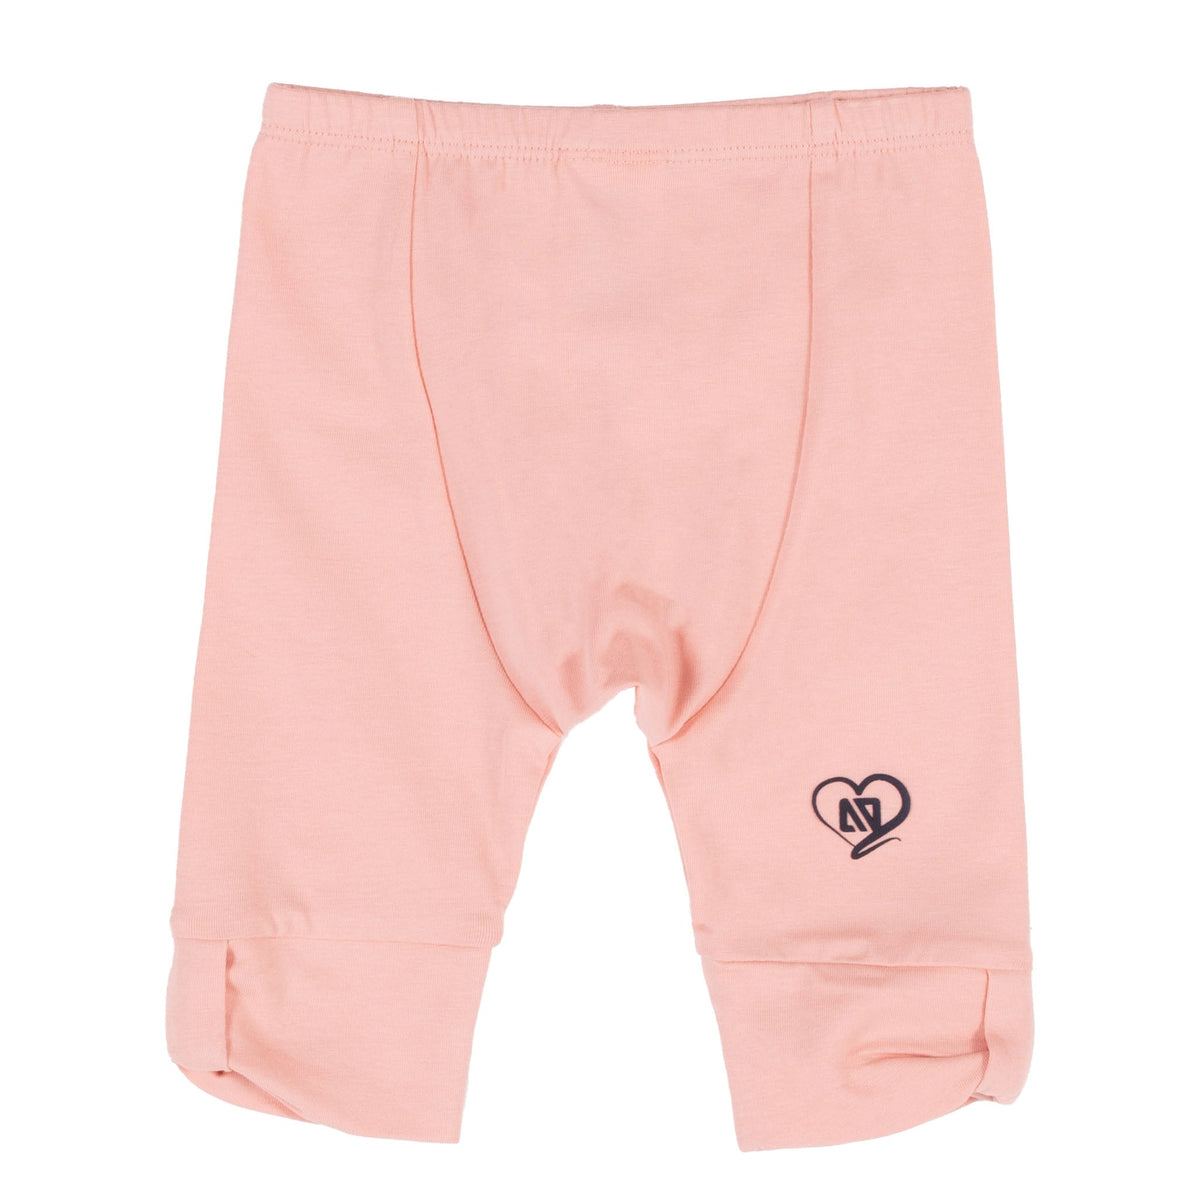 Legging 3/4 pour bébé fille par Nanö | S2254-02 Corail | Boutique Flos, vêtements pour bébés et enfants